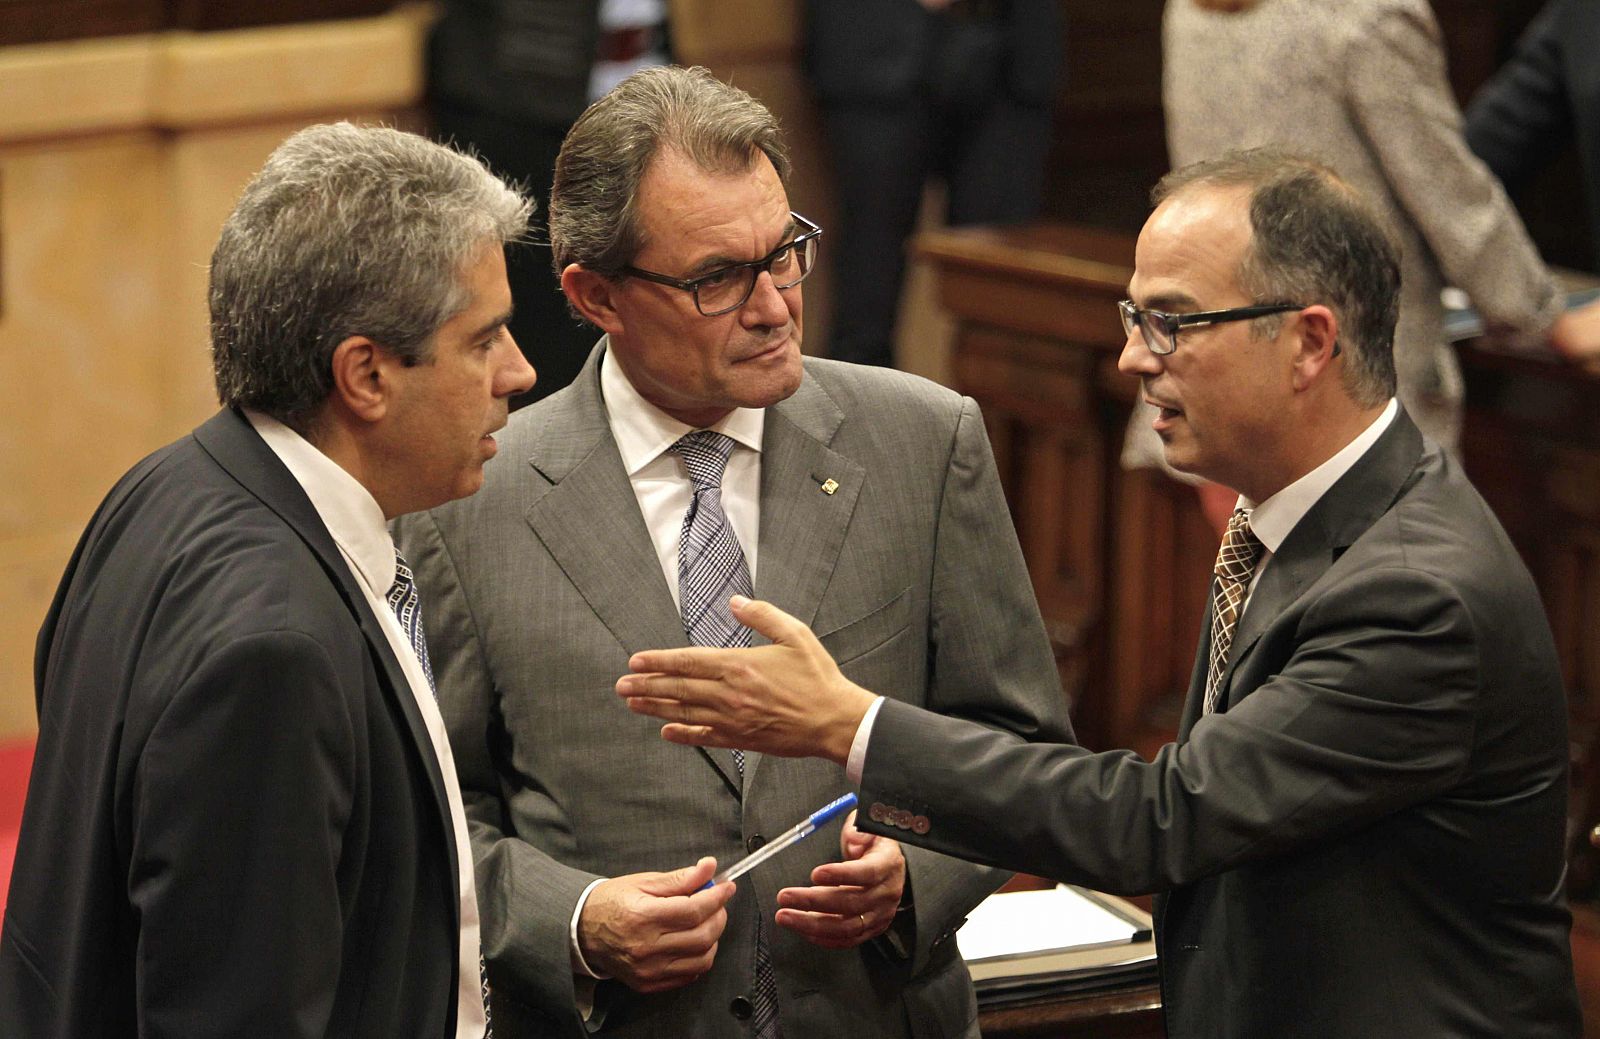 El presidente de la Generalitat, Artur Mas (c) habla con el conseller de la Presidencia, Francesc Homs (i) y el portavoz del grupo parlamentario de CiU, Jordi Turull (d).